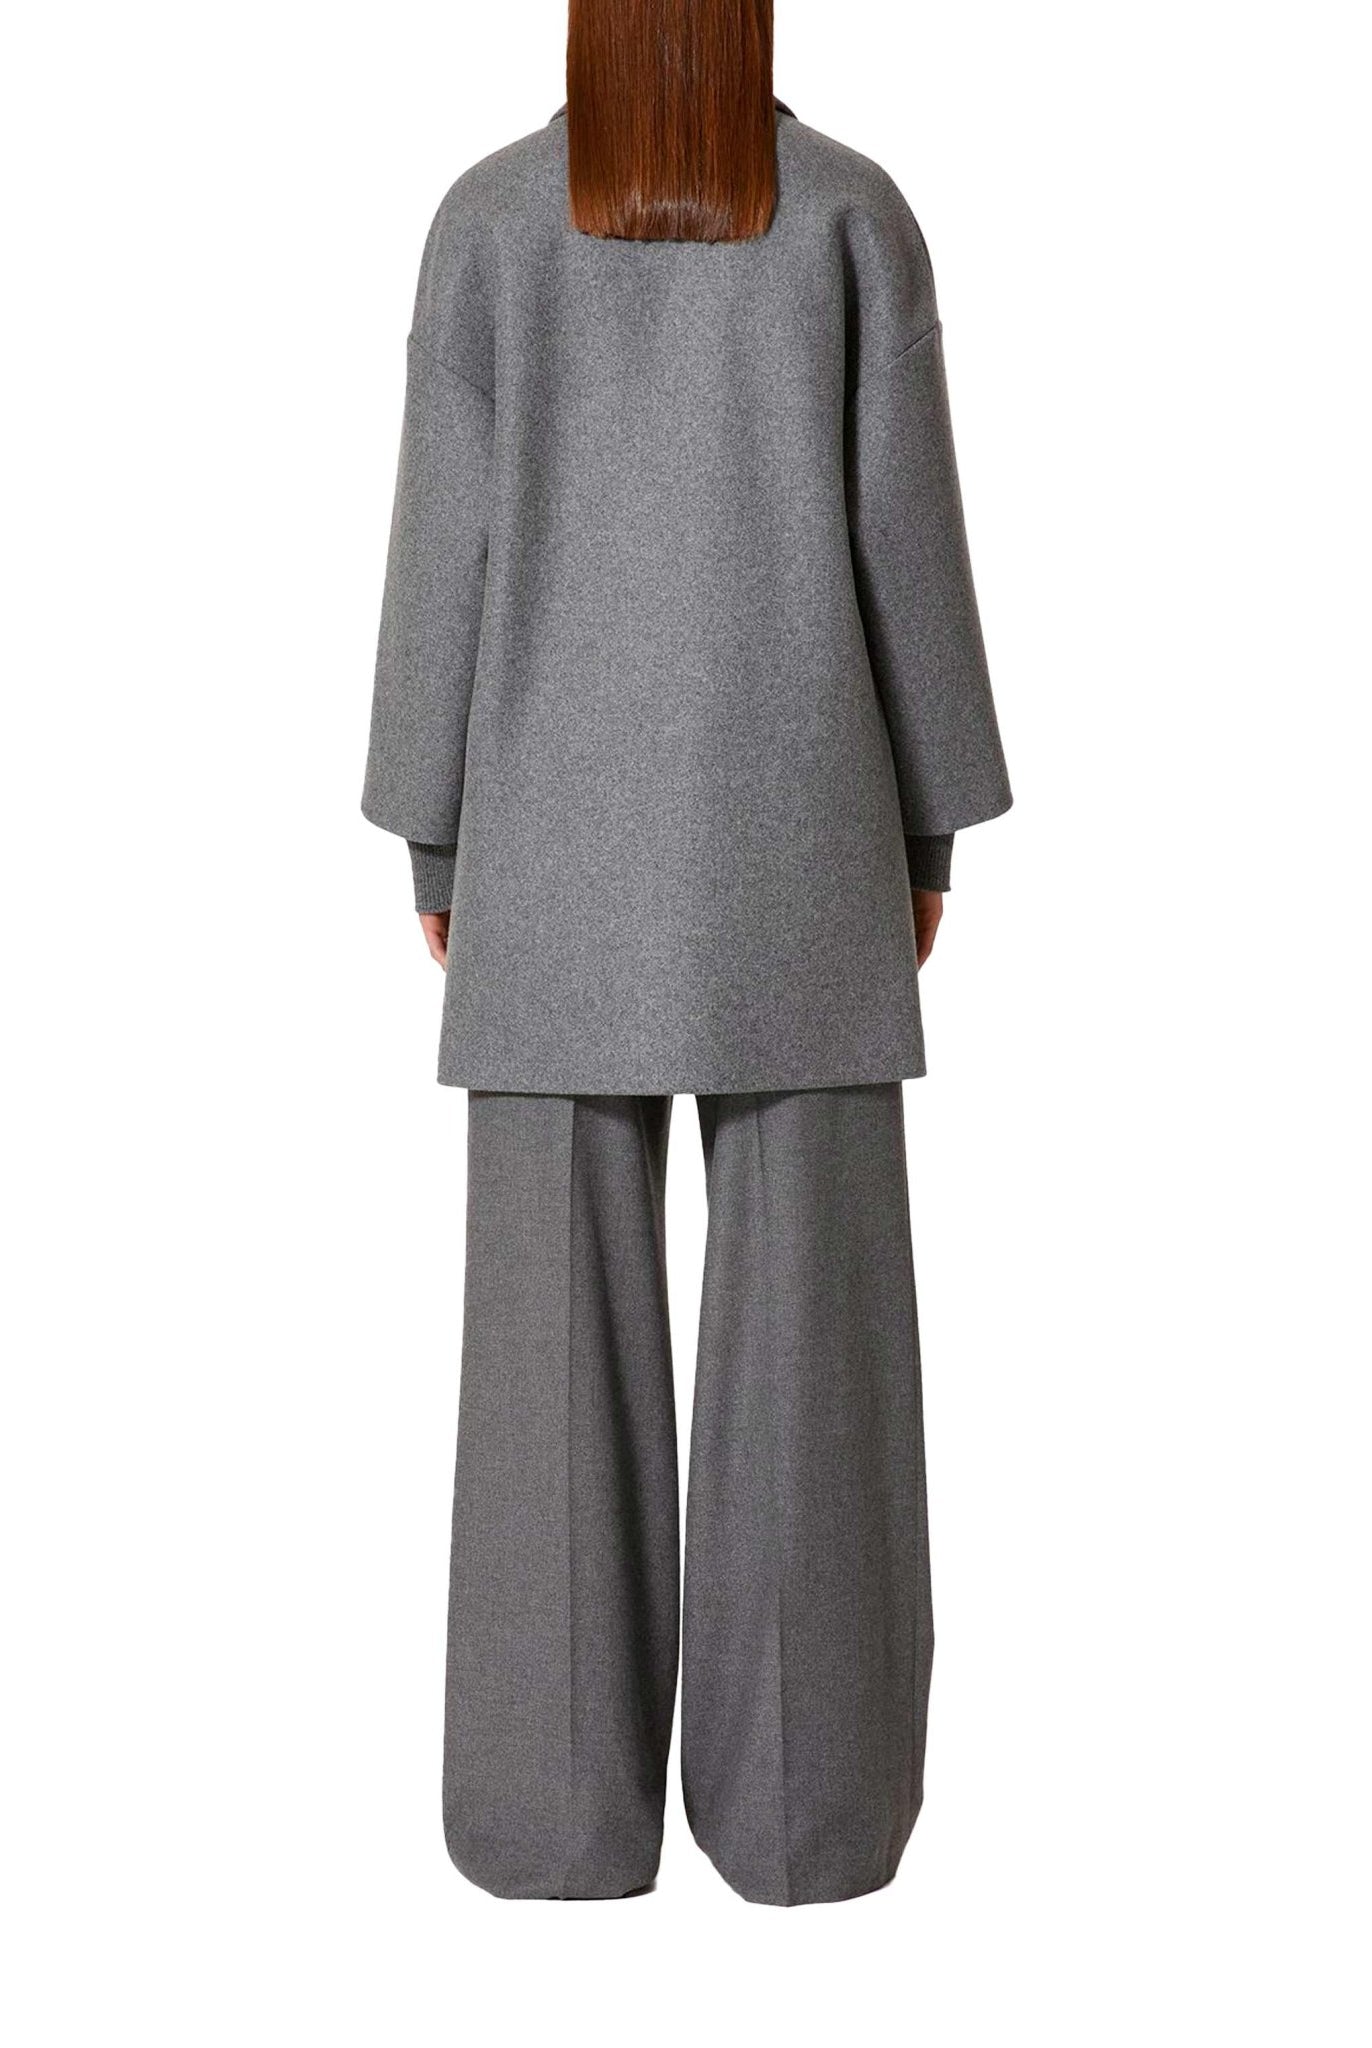 Cappotto in panno lana grigio- Red Valentino -Giorgioquinto